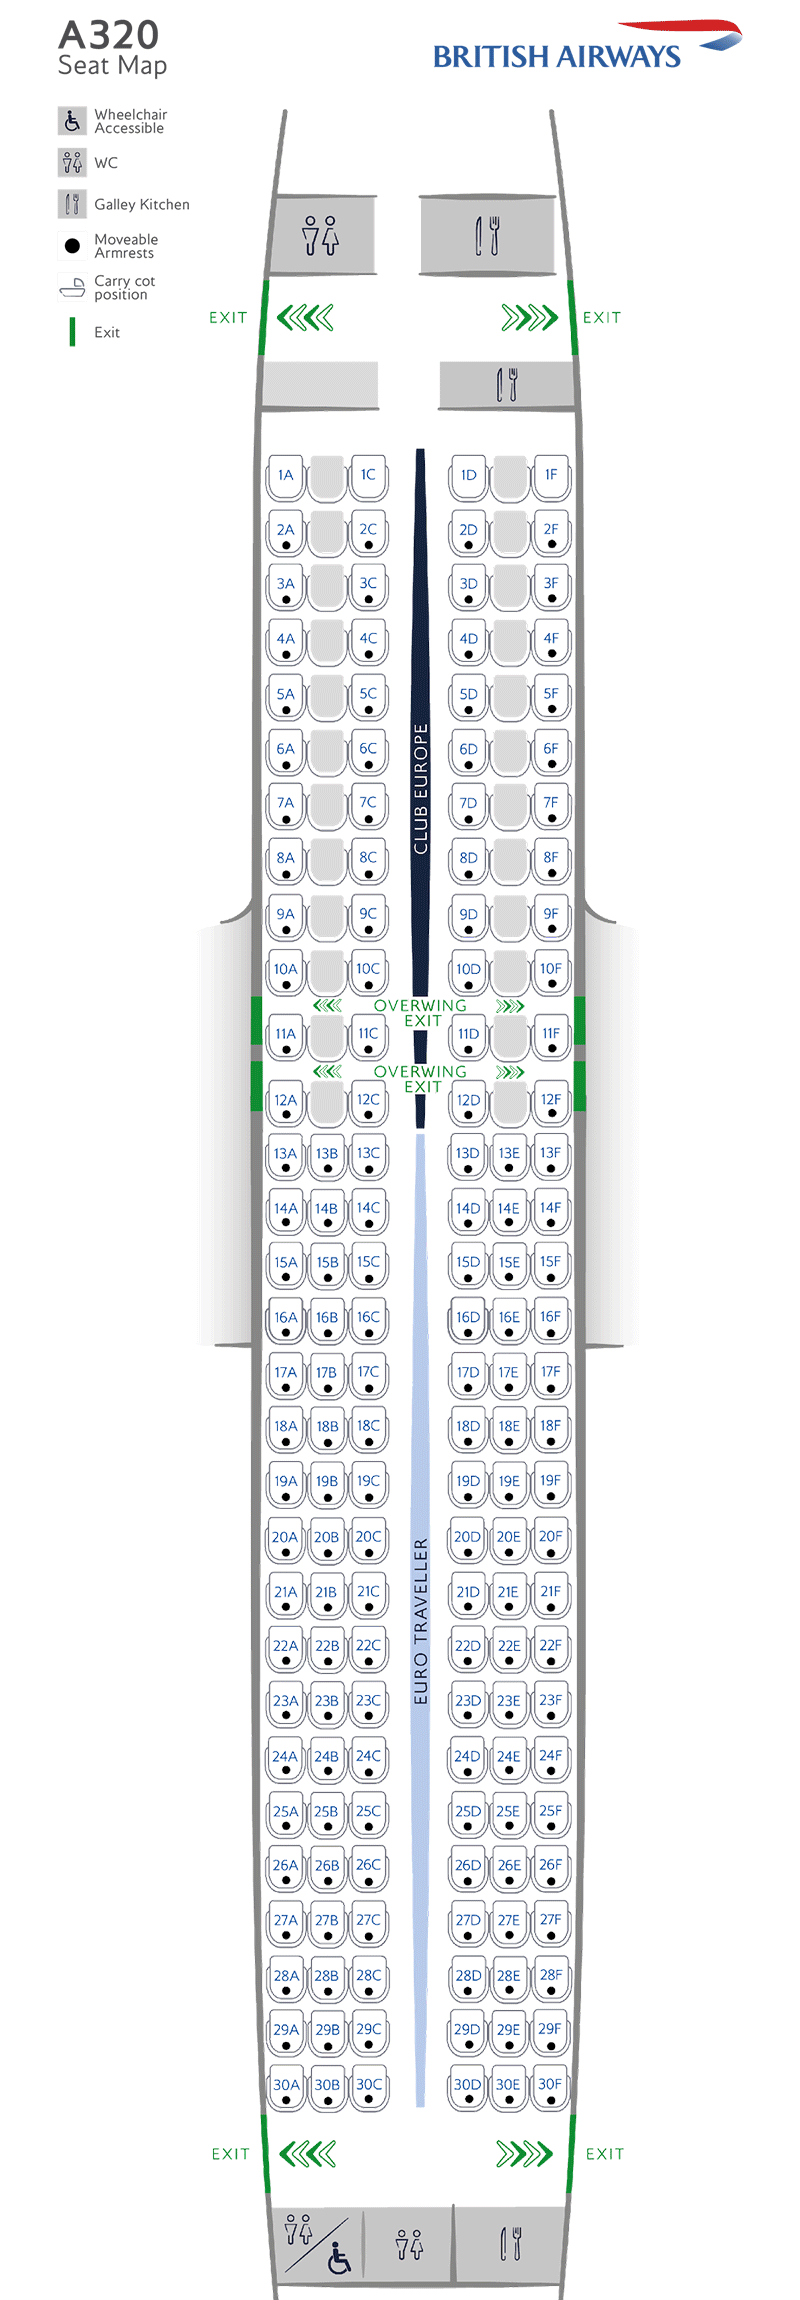 Plan de cabine de l'A319-131